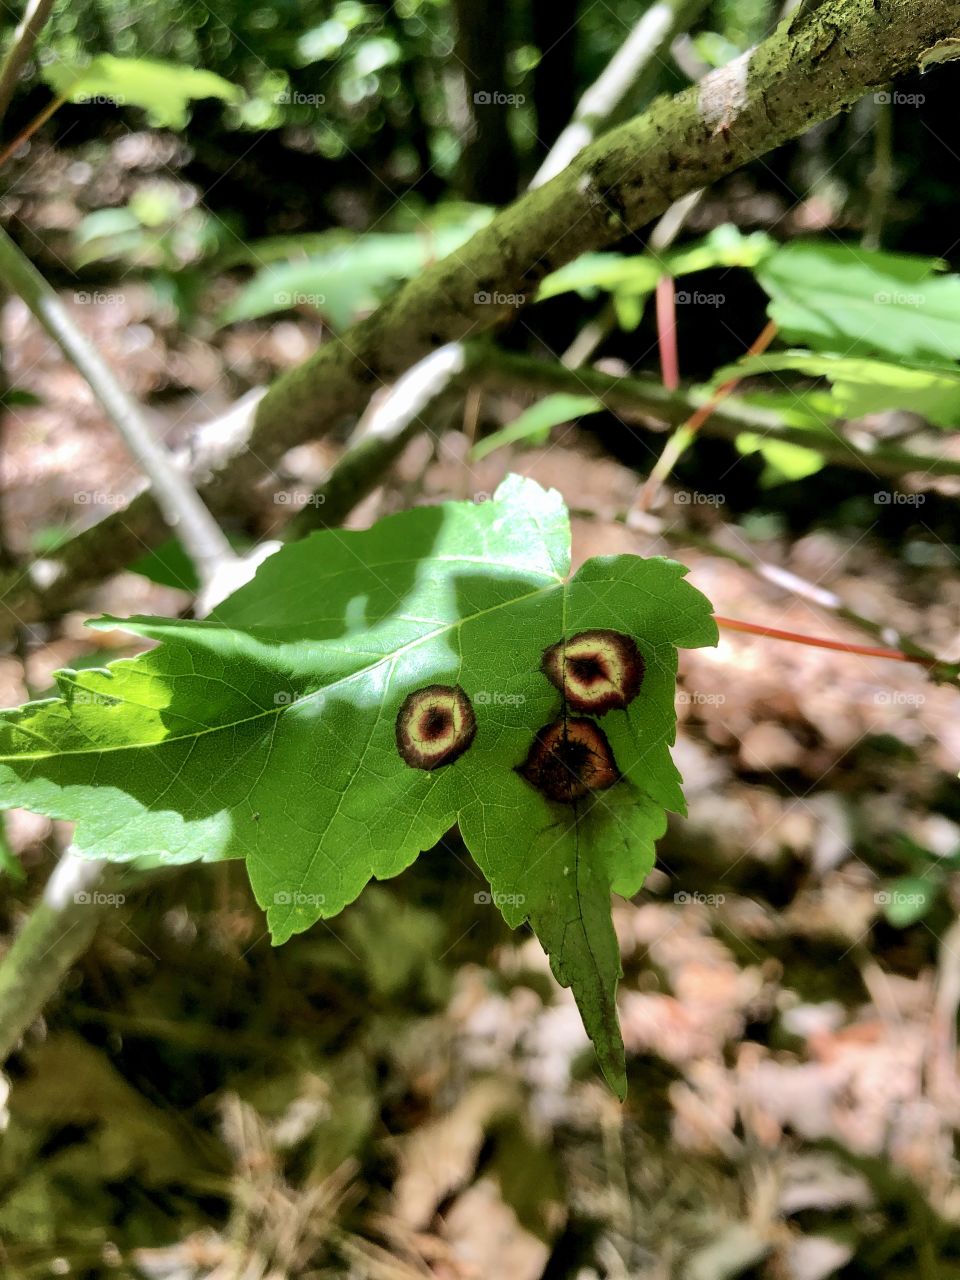 Surprised looking leaf on tree